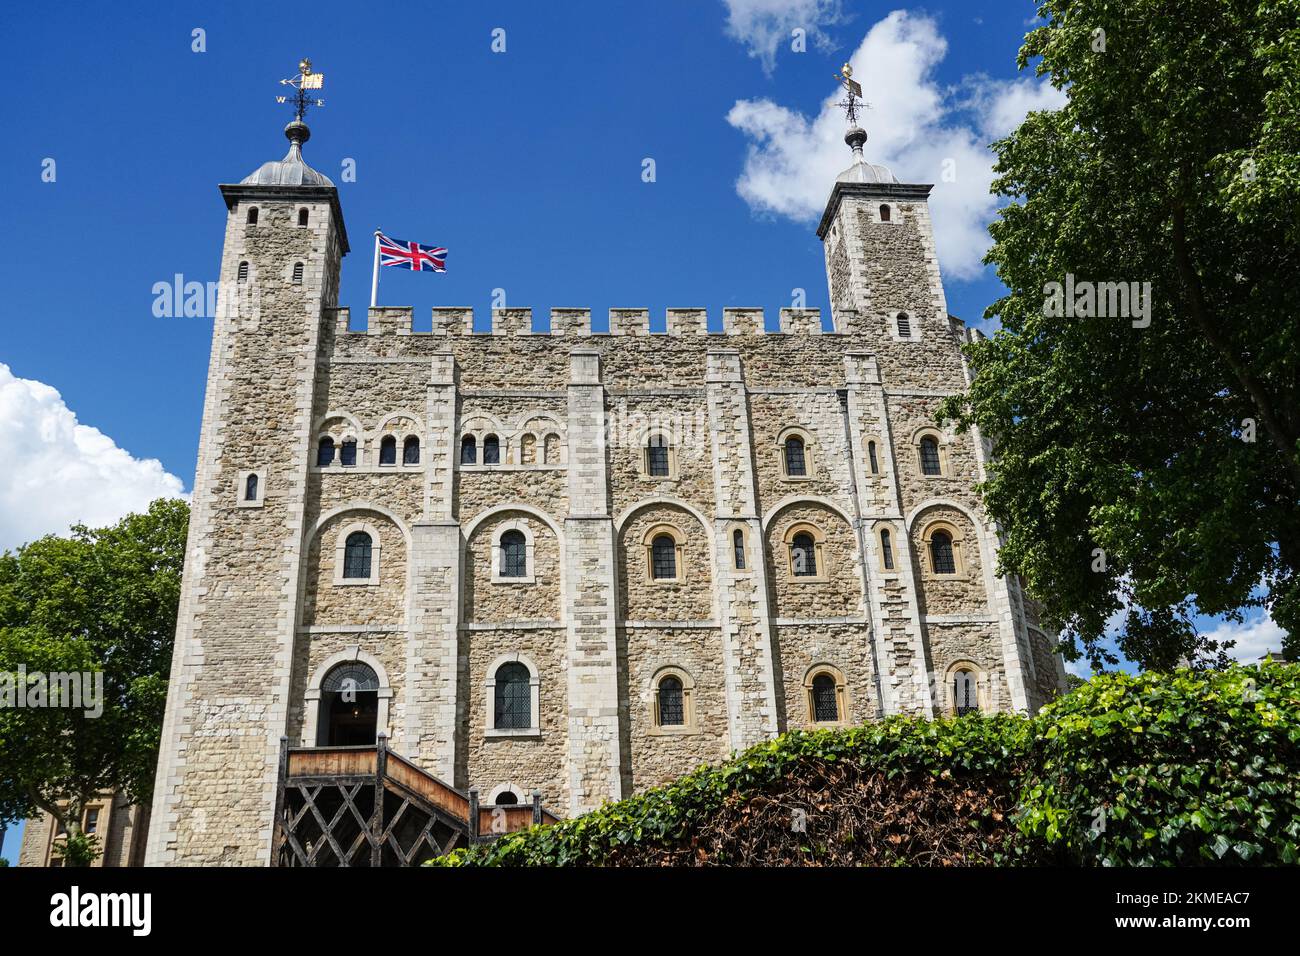 La Tour Blanche à la Tour de Londres, Londres Angleterre Royaume-Uni Banque D'Images